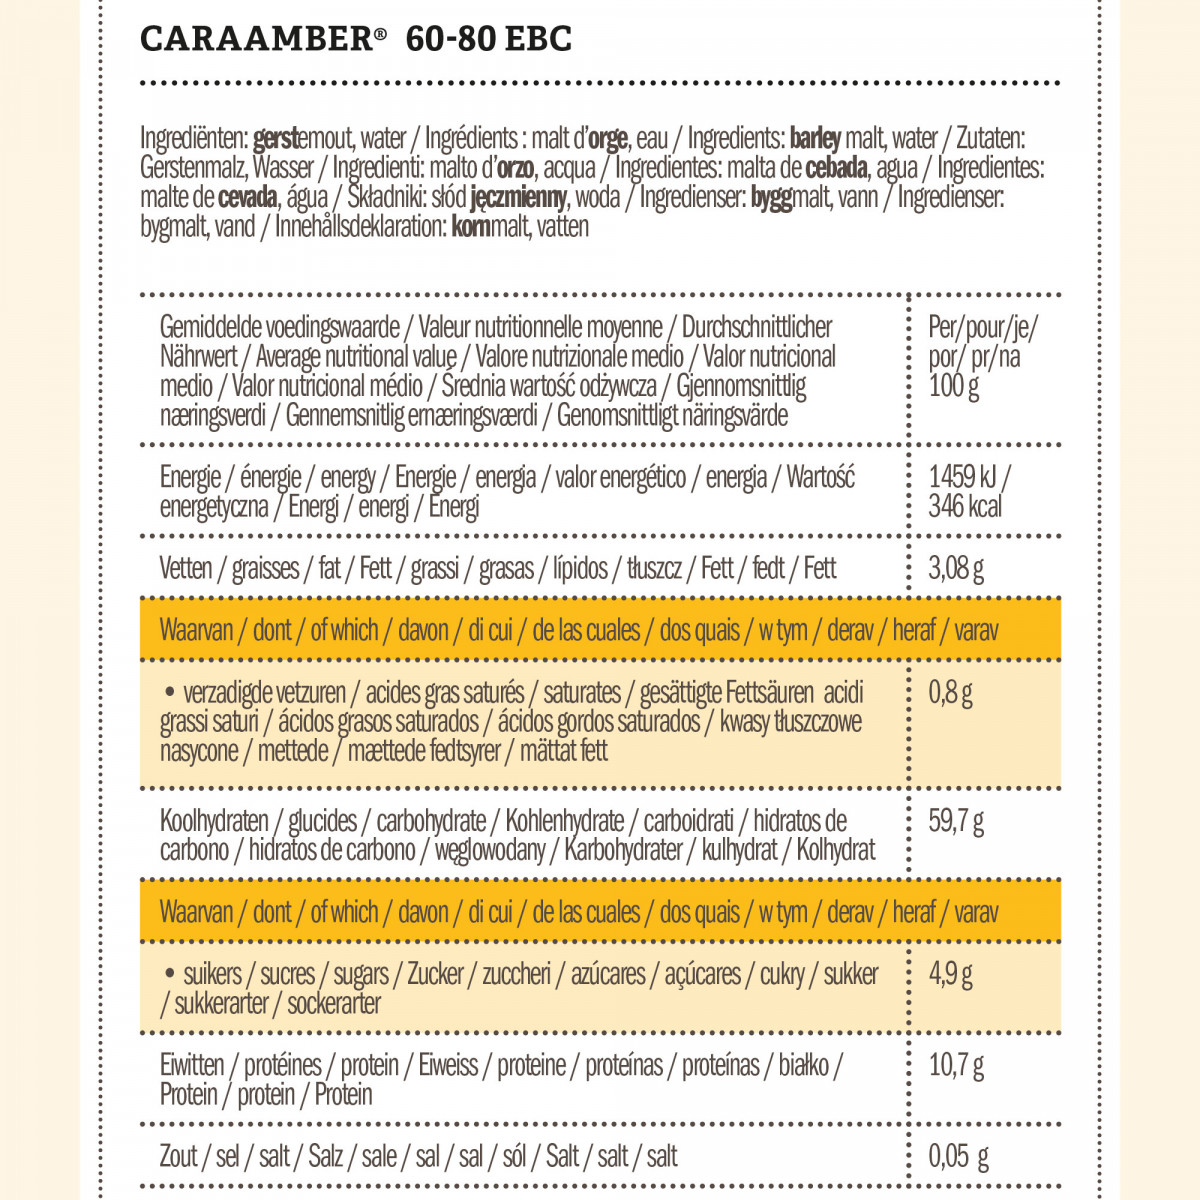 Weyermann® CaraAmber® 60-80 EBC 5 kg